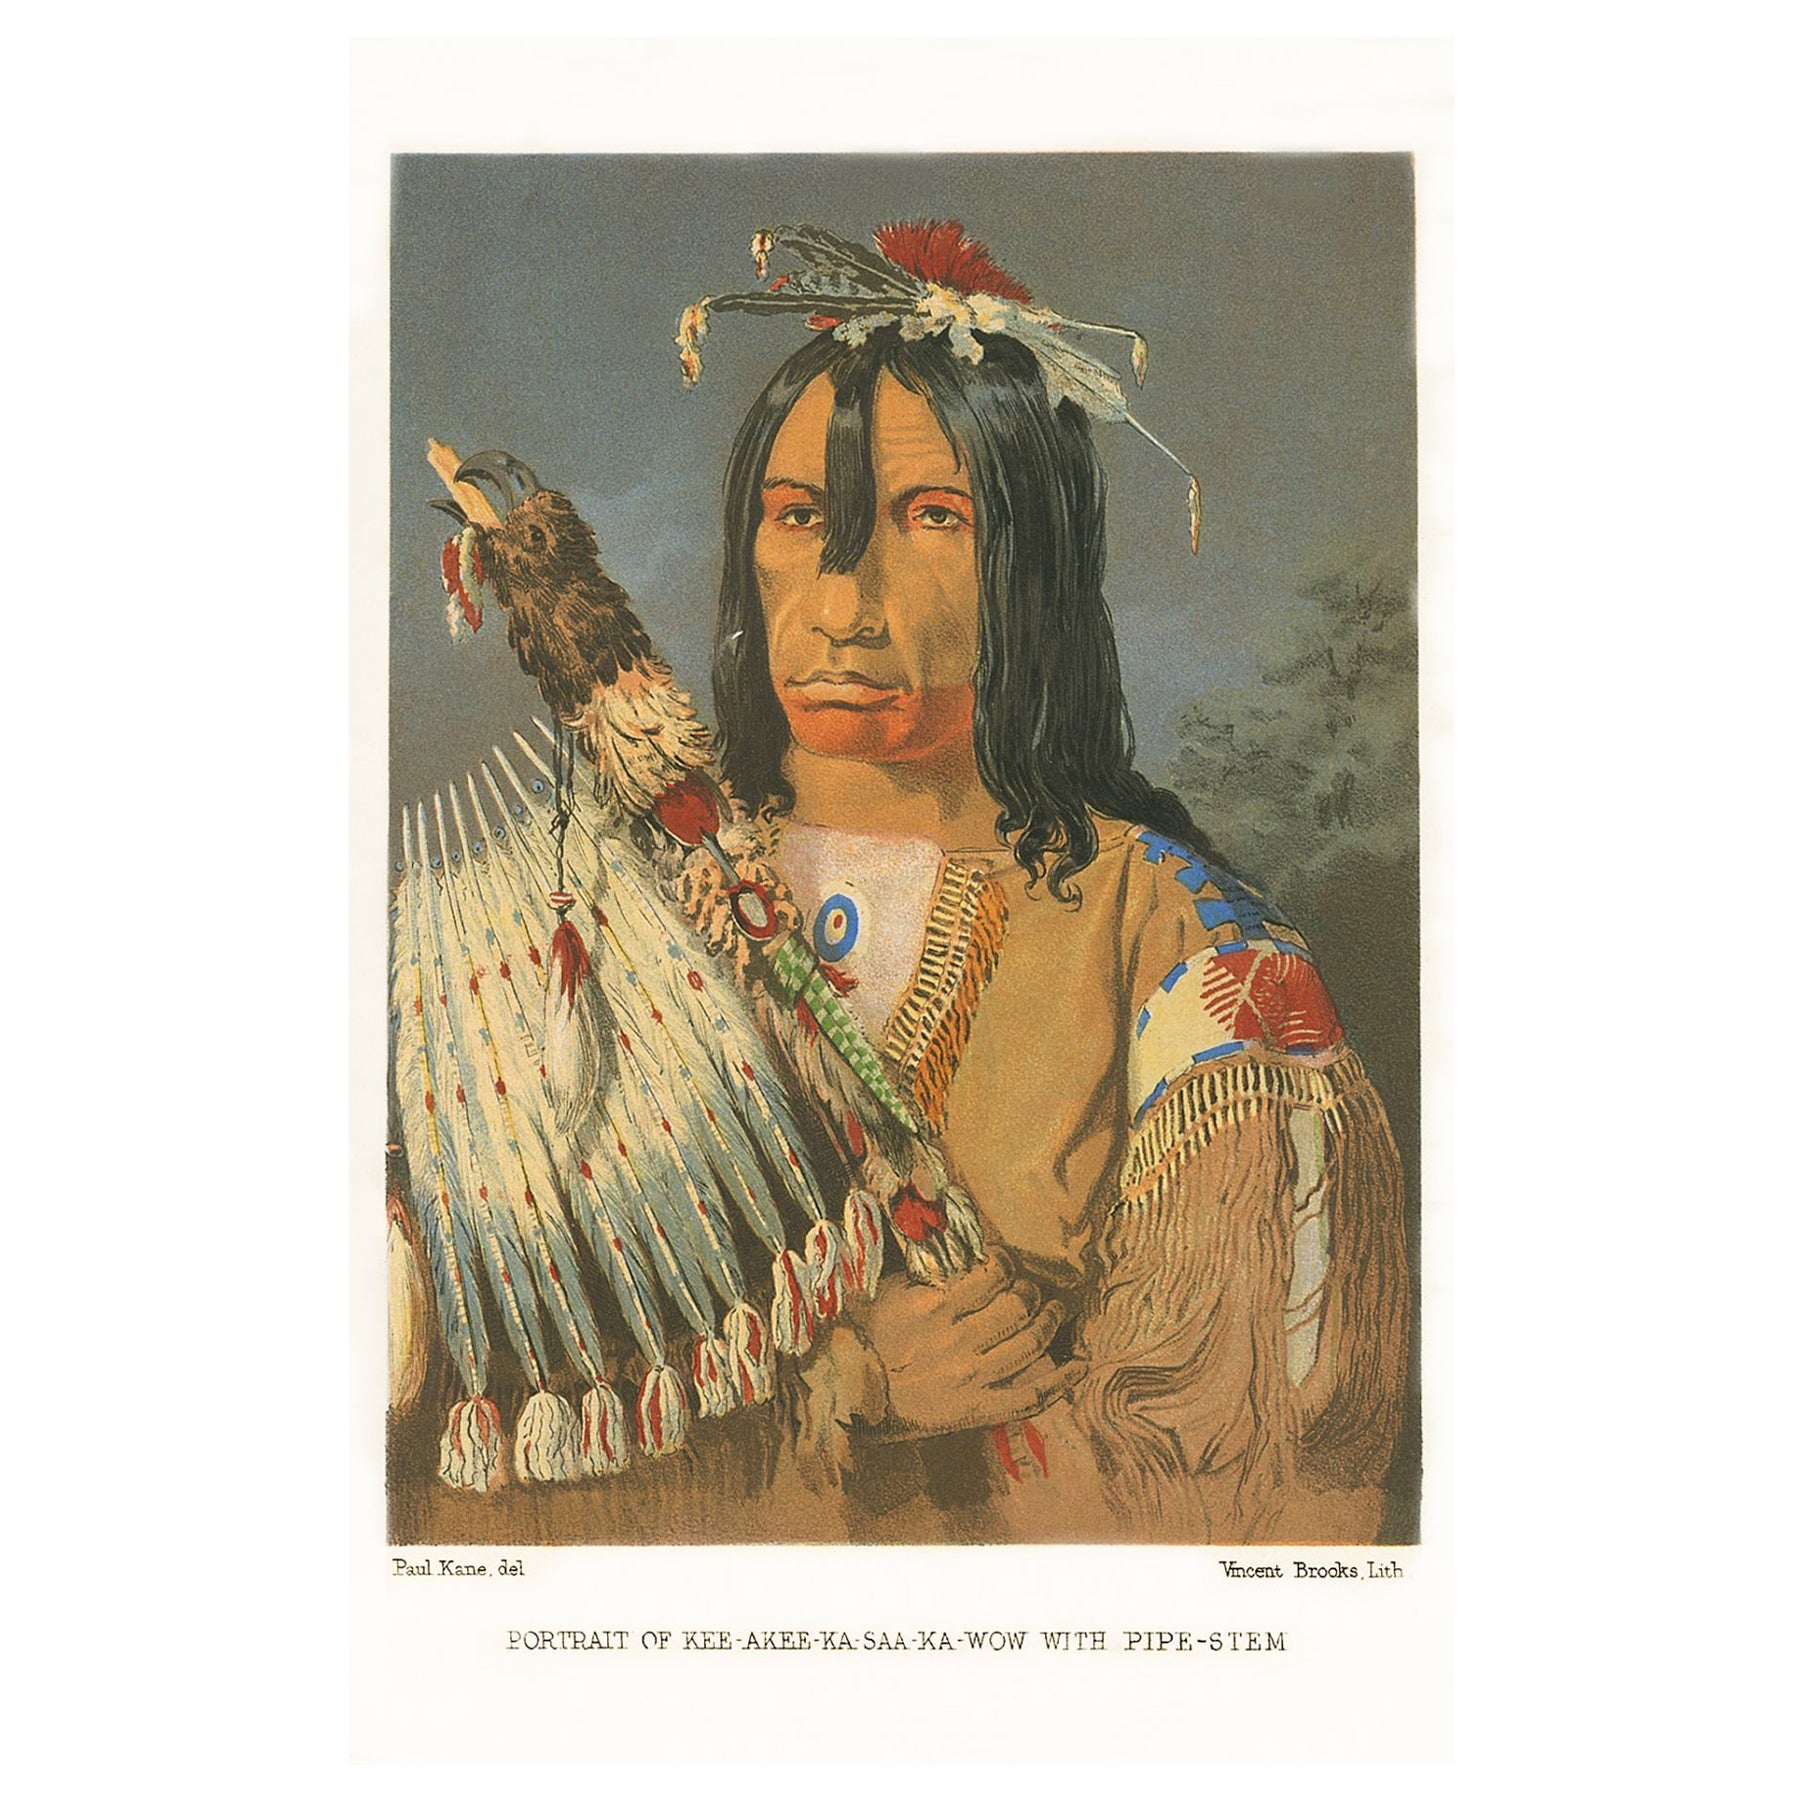 Première édition de l'œuvre historique sur Les Indiens d'Amérique du Nord" de Paul Kane